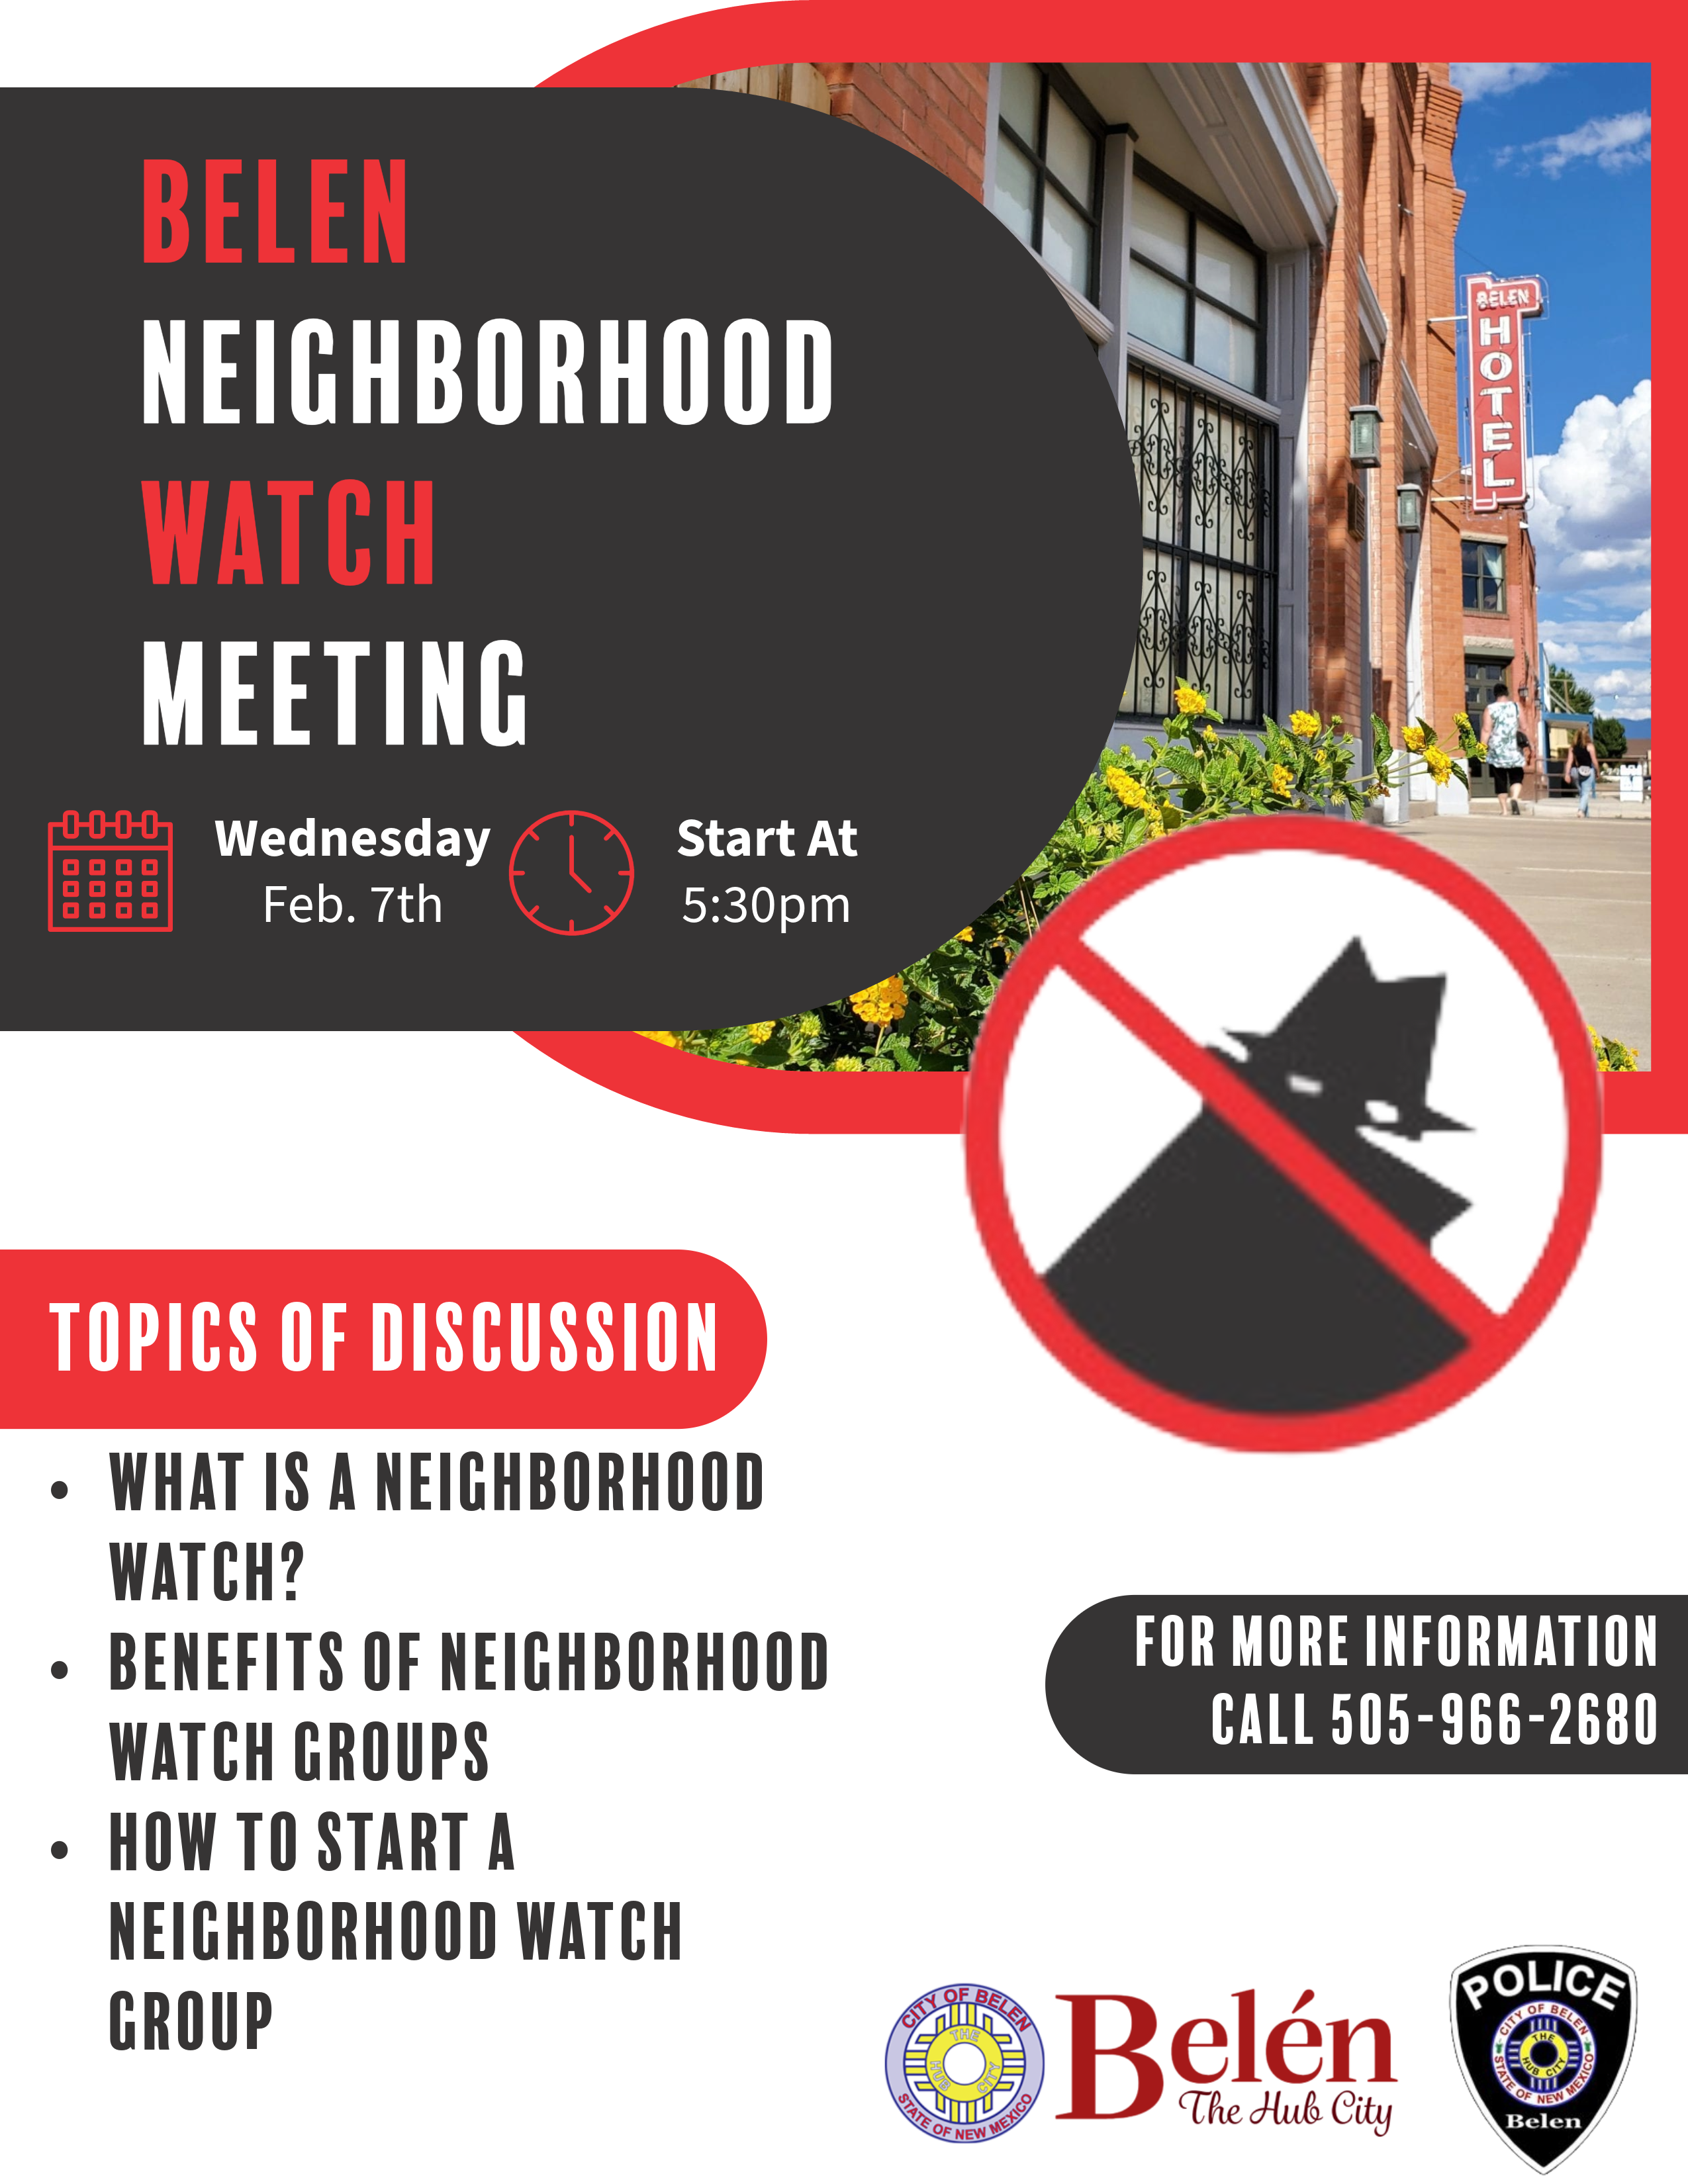 Featured image for “Belen Neighborhood Watch Meeting”